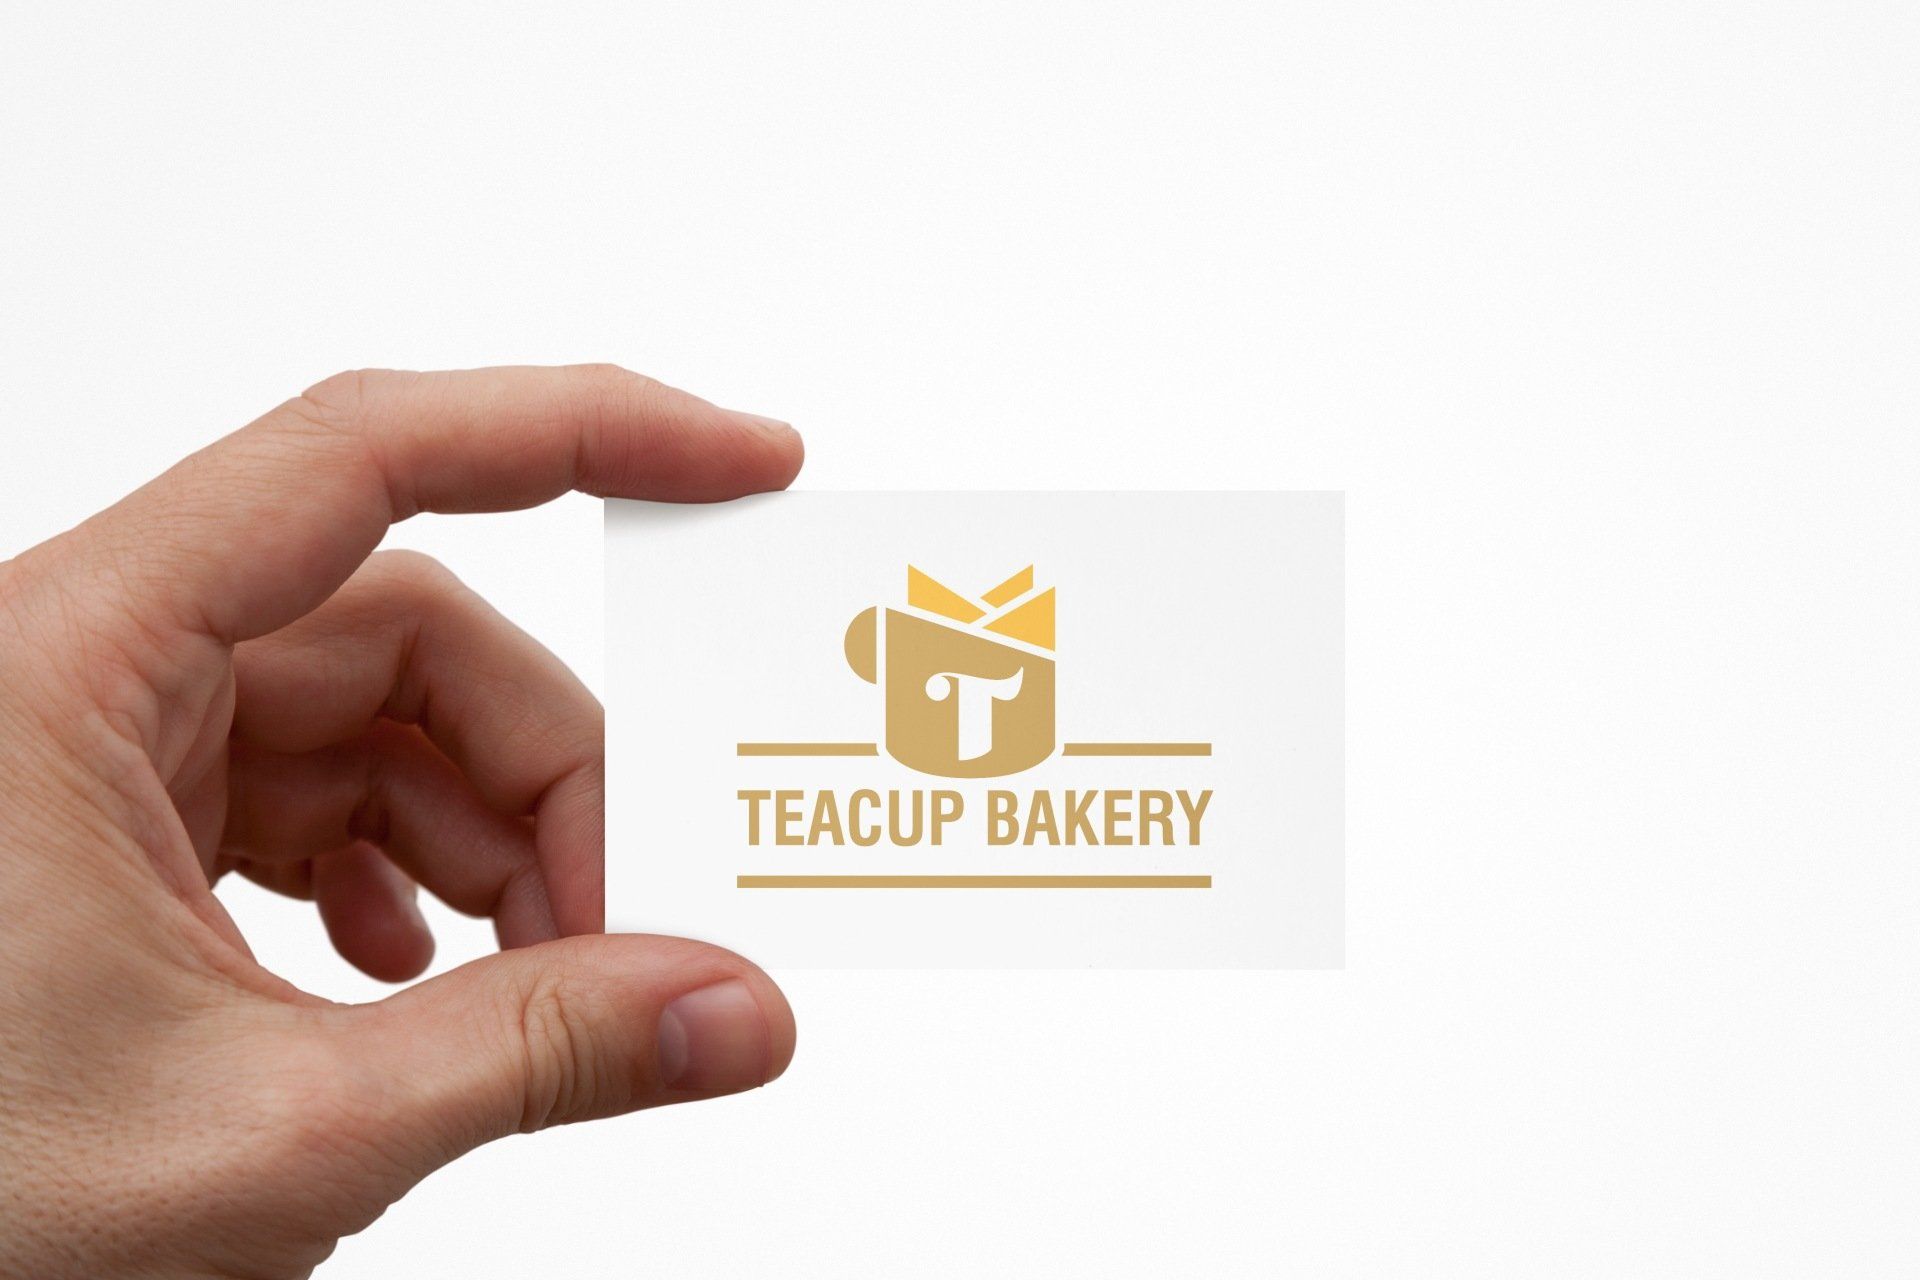 teacup bakery business card